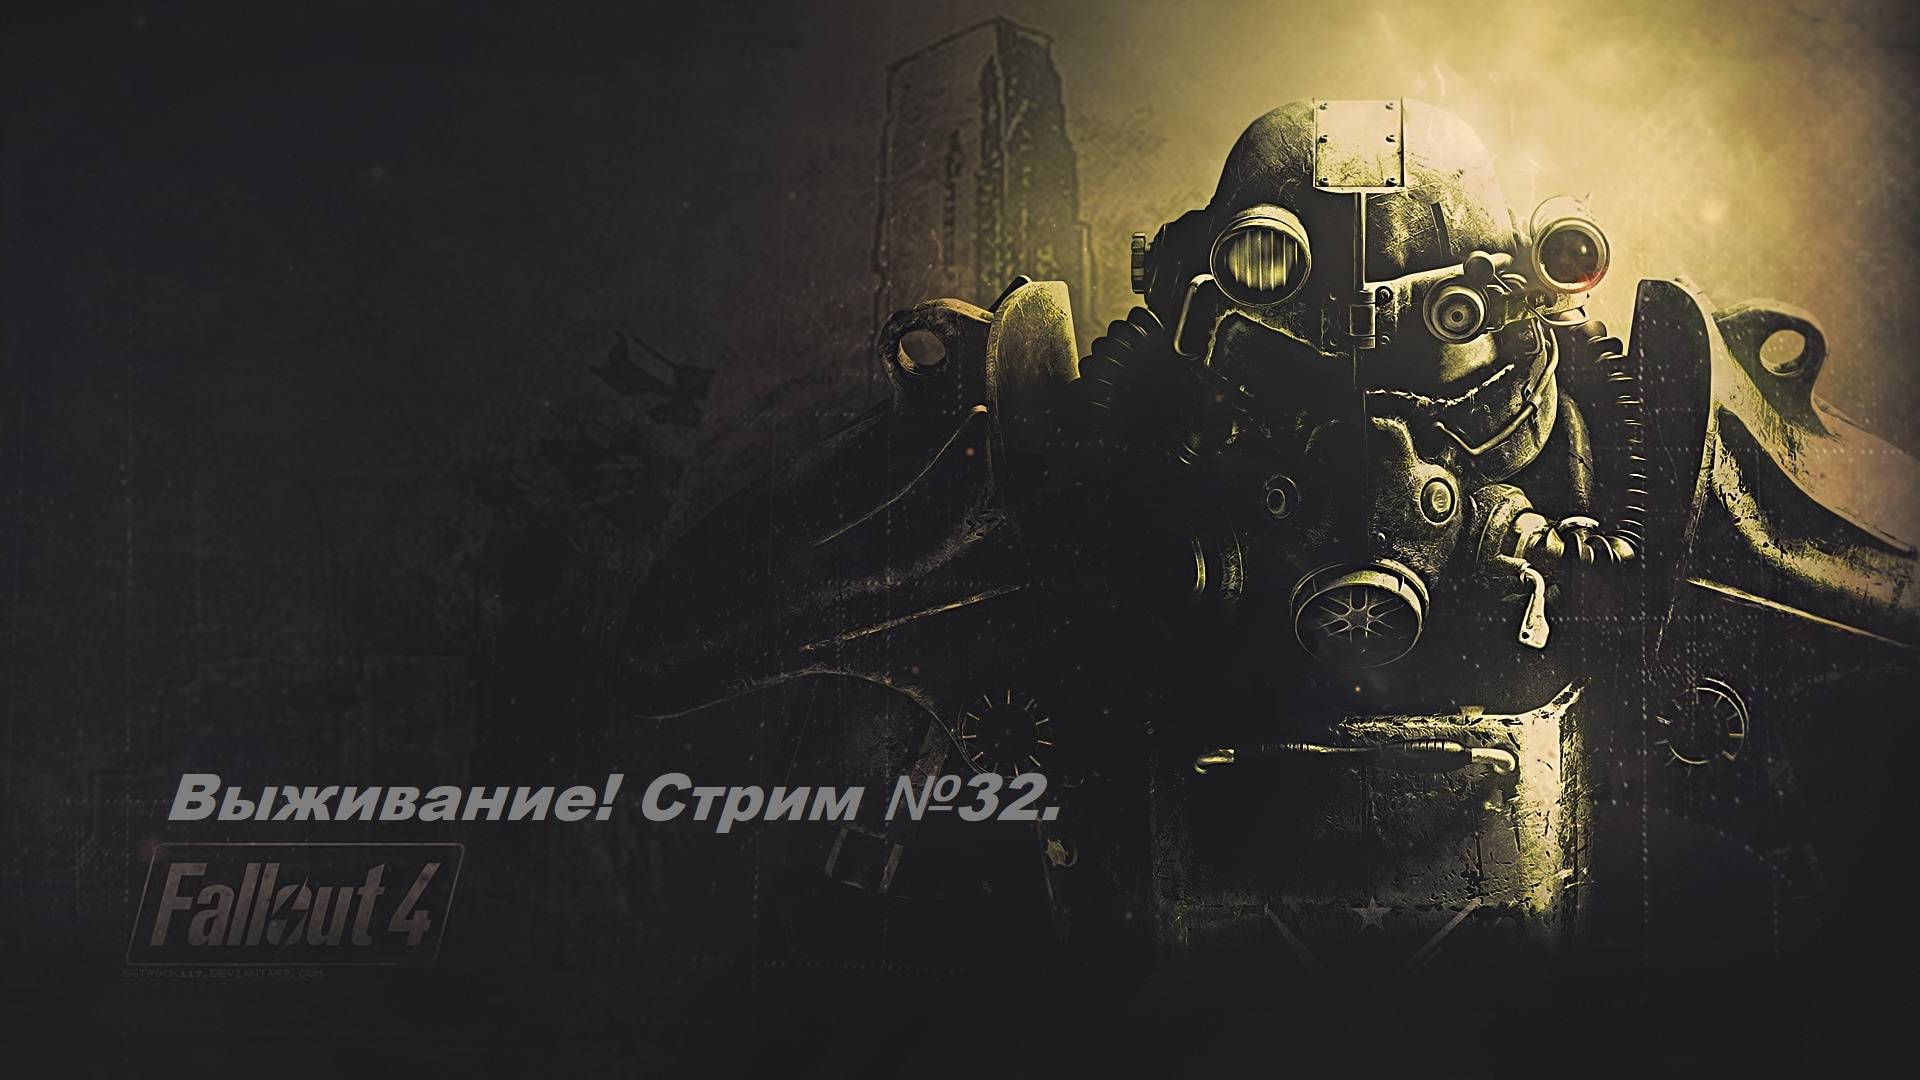 Fallout 4. Прохождение на уровне выживания первый раз! (Новичек без силовой брони) Стрим №32.